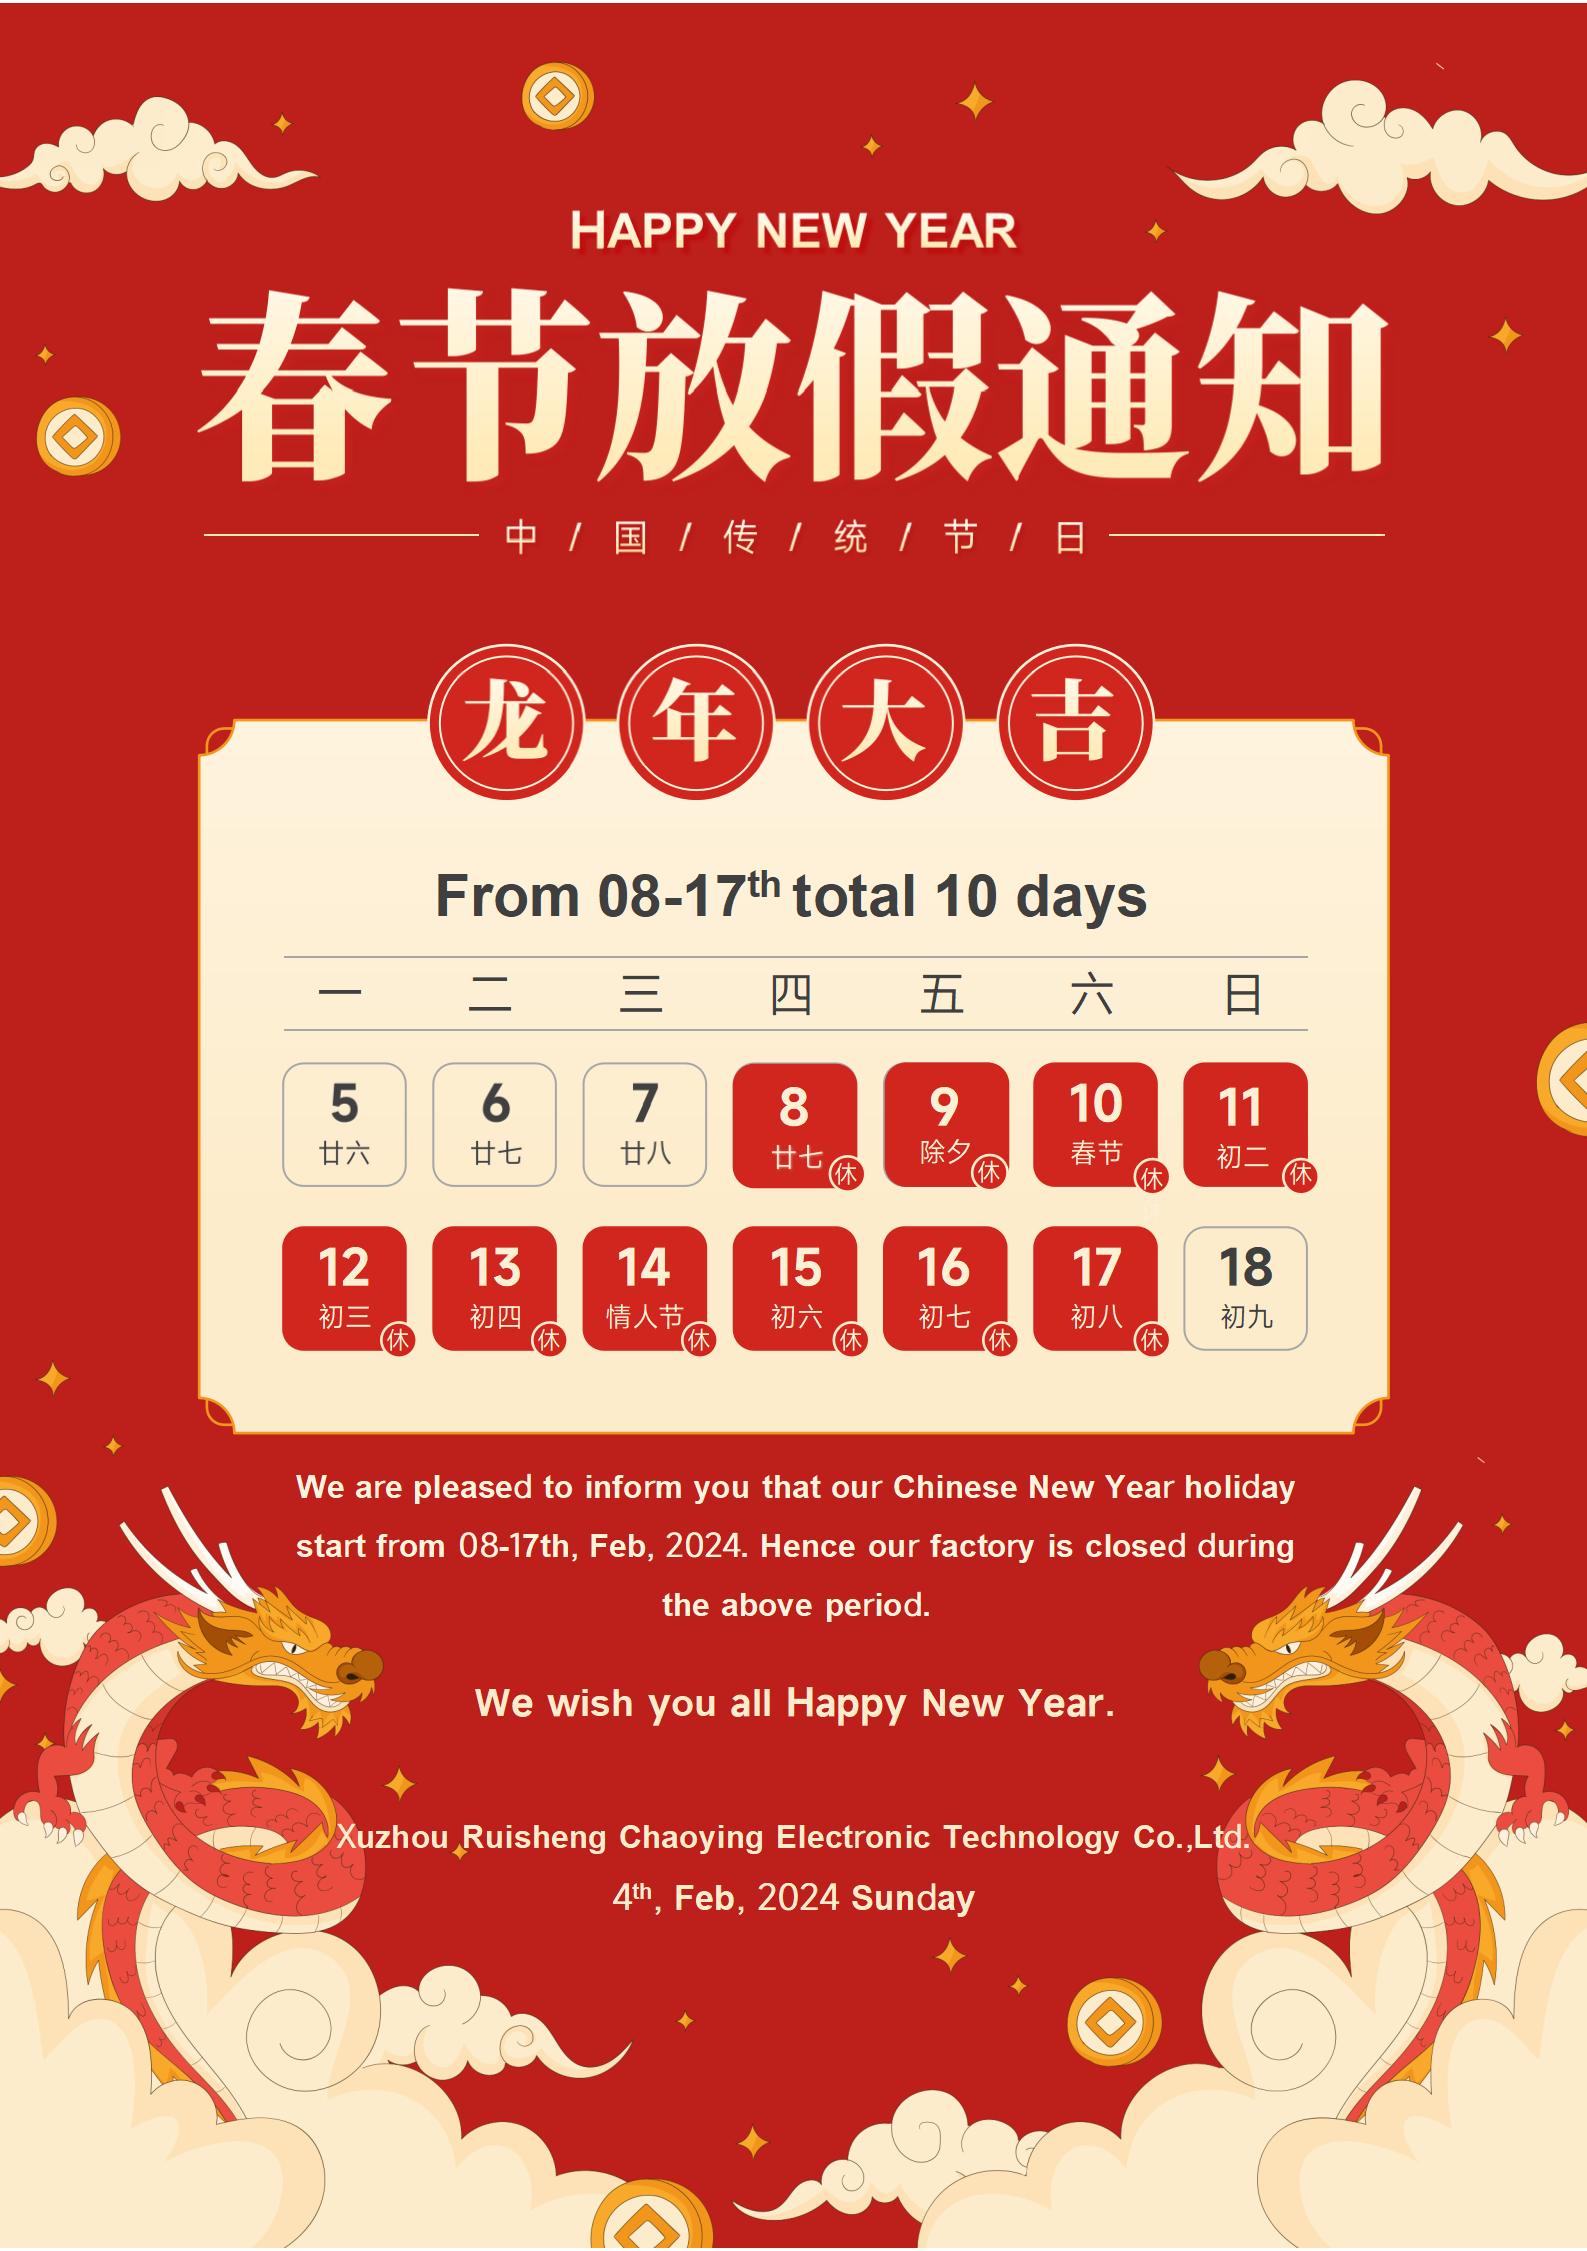 Semestermeddelande: Kinesiska nyåret 2024 (Lunar Spring Festival)